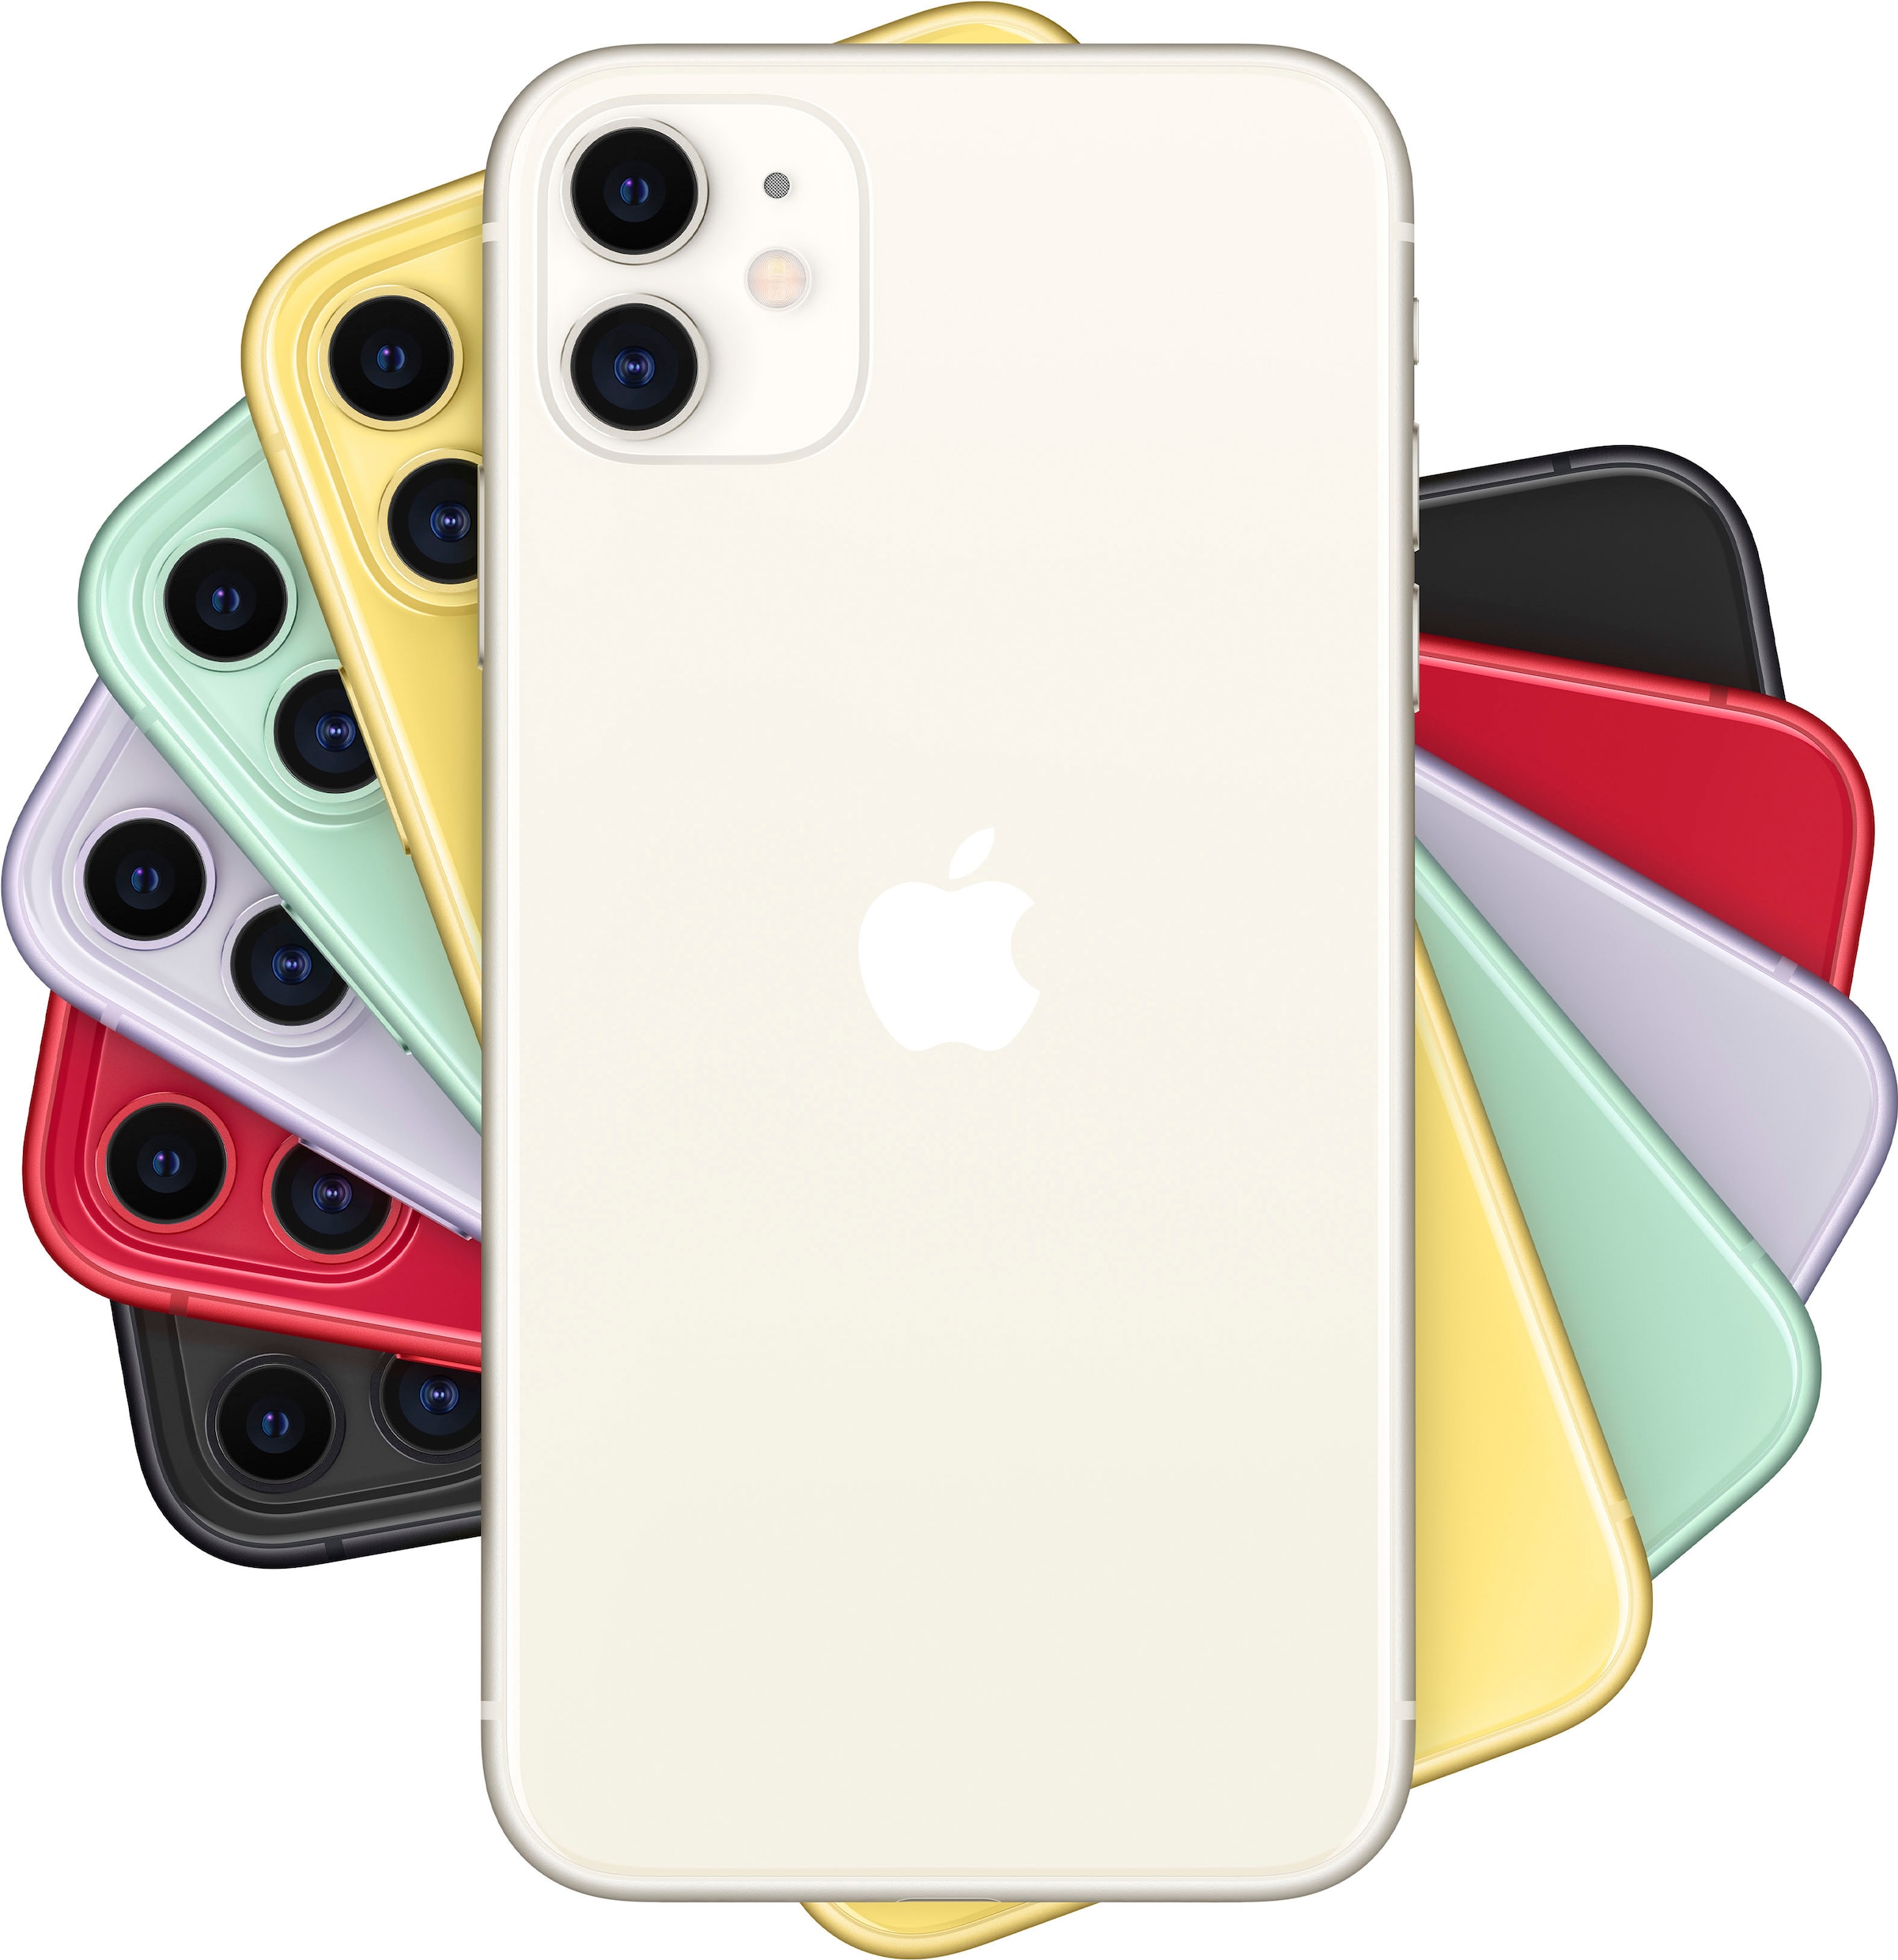 Apple Smartphone »iPhone 11«, white, 15,5 cm/6,1 Zoll, 128 GB Speicherplatz, 12 MP Kamera, ohne Strom-Adapter und Kopfhörer